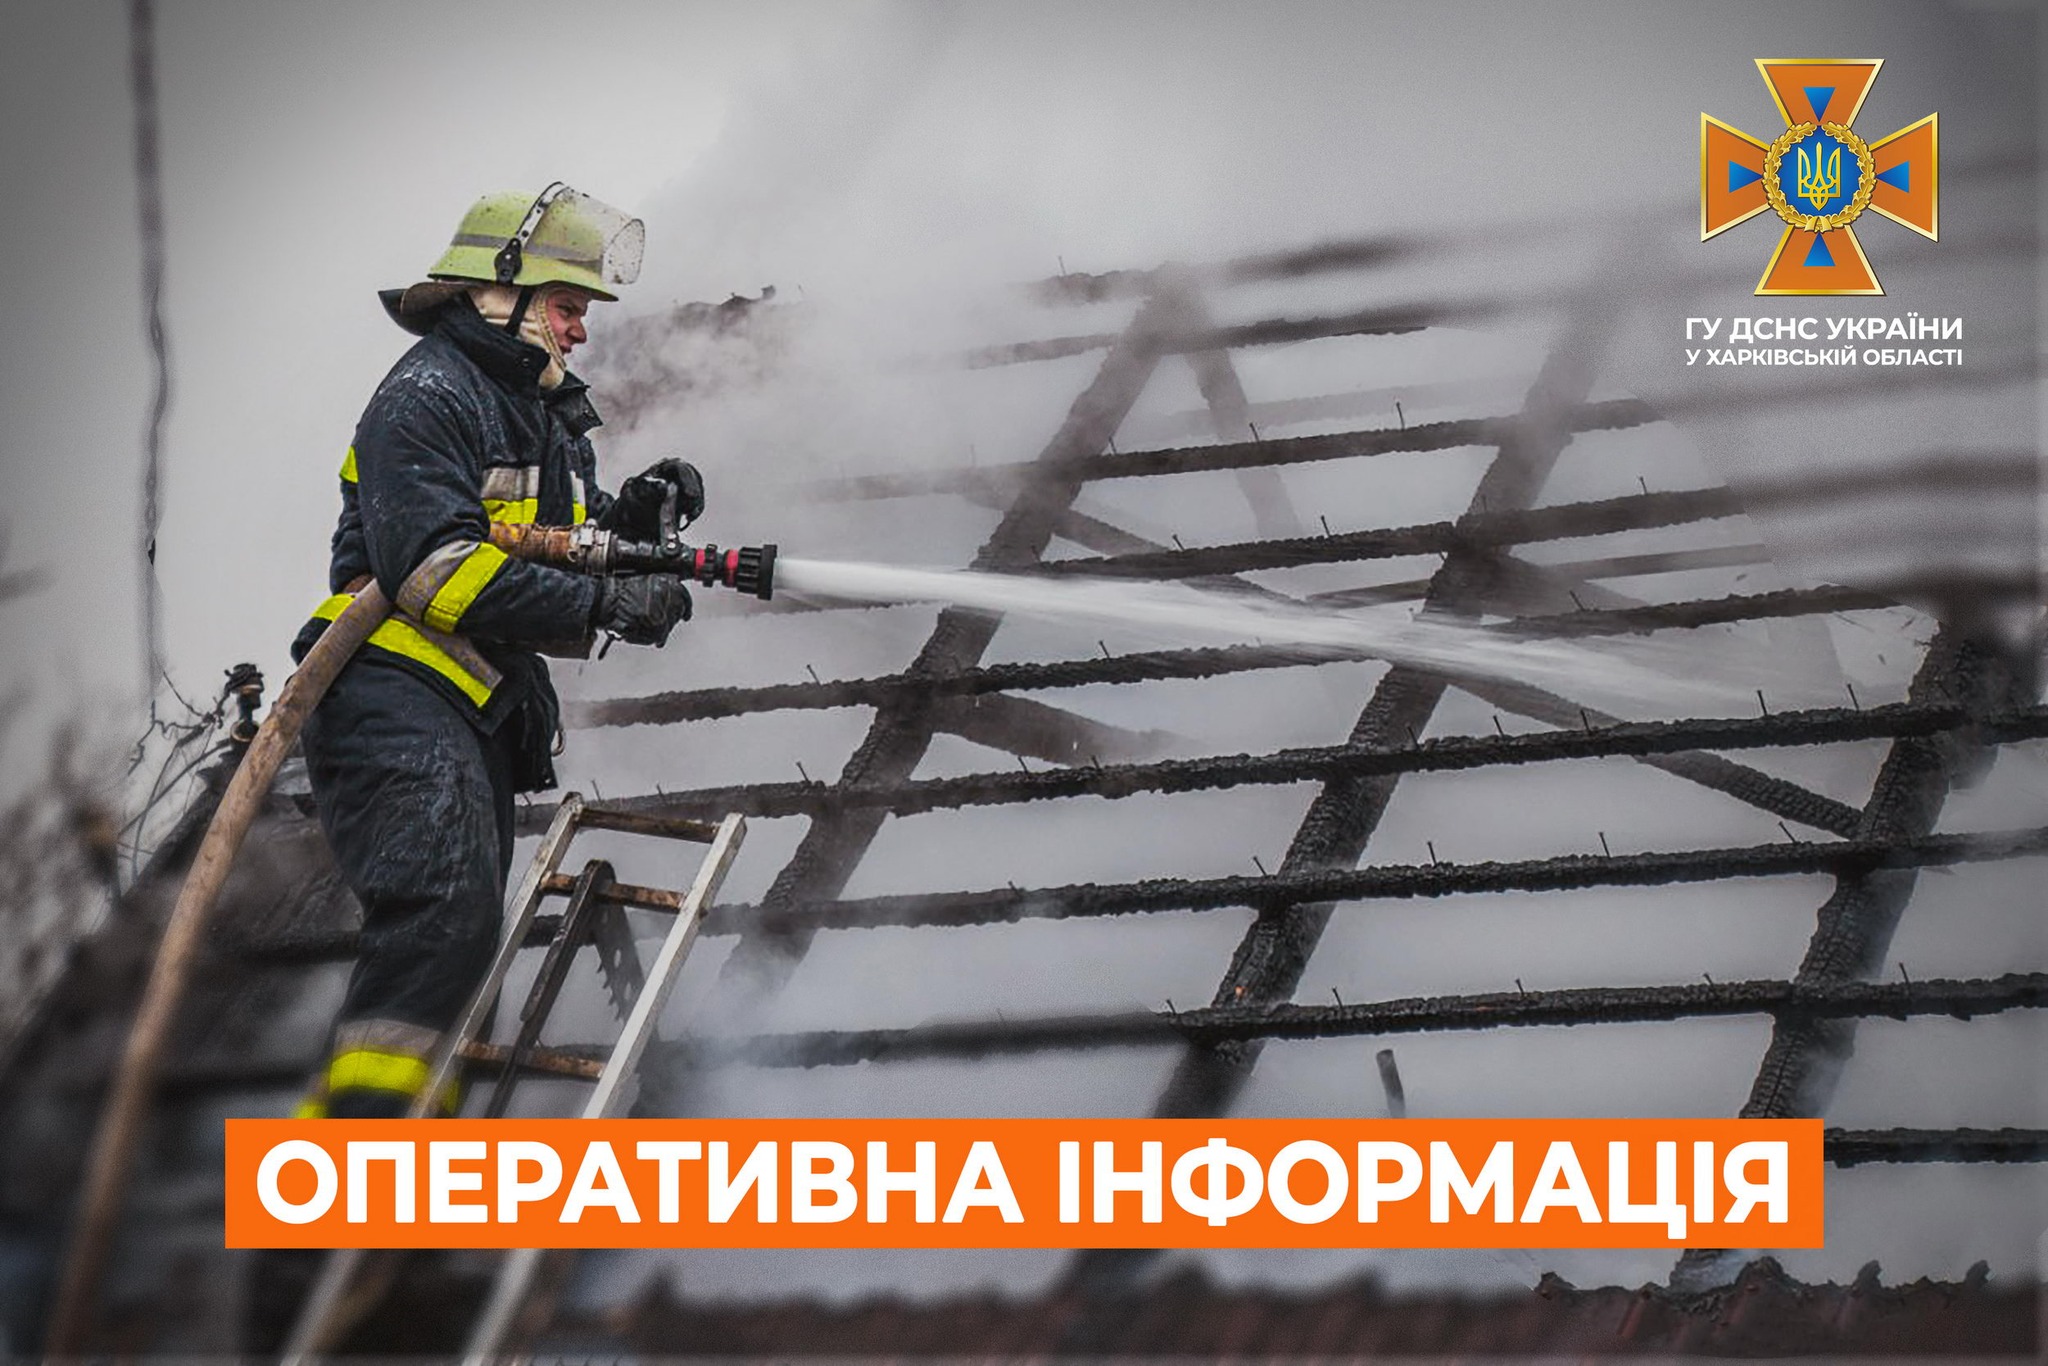 27-летний мужчина пострадал в пожаре на Харьковщине